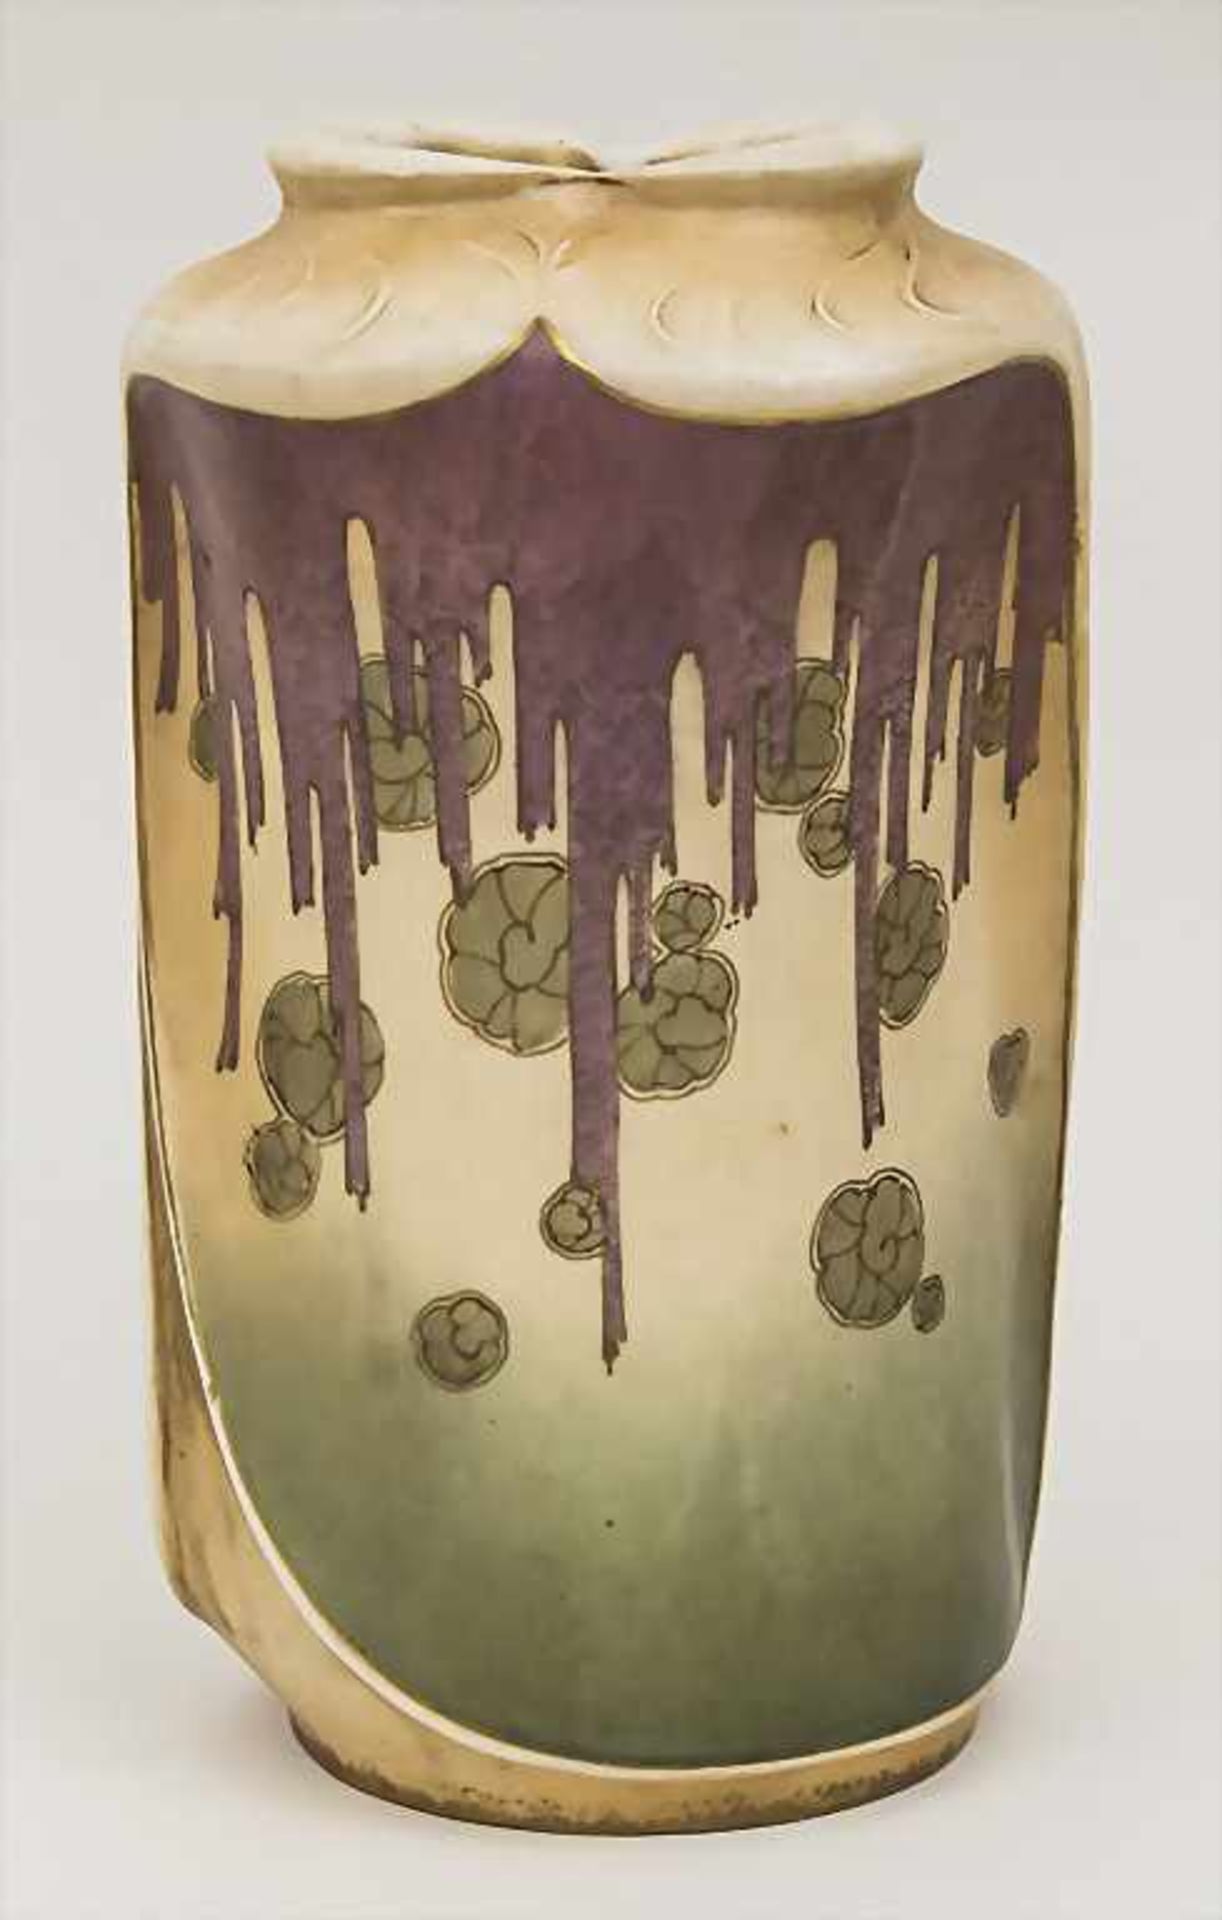 Jugendstil Vase / An Art Nouveau Vase, Amphora-Werk Riessner, Stellmacher & Kessel, Turn bei Teplitz - Bild 2 aus 4